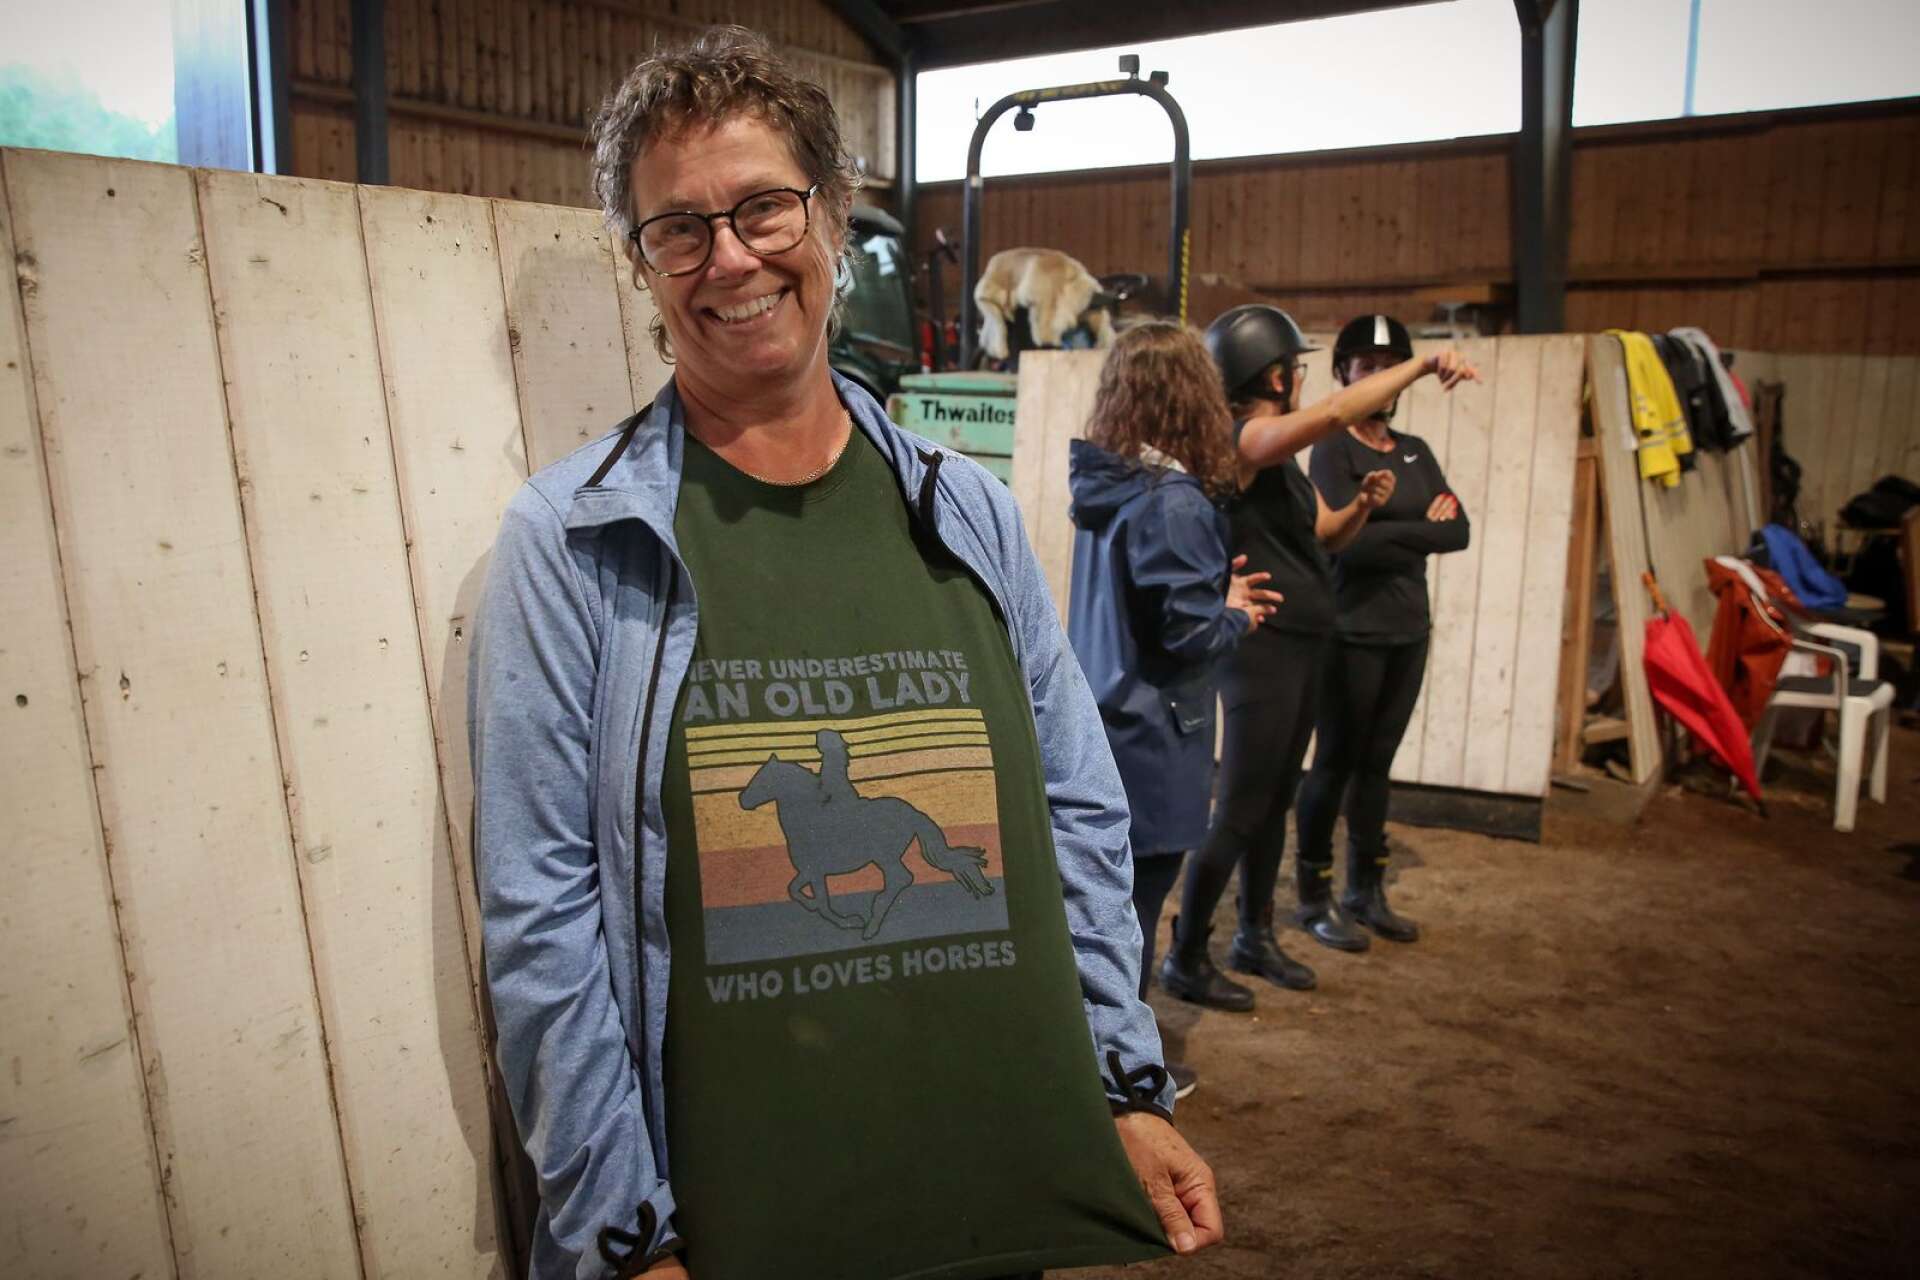 Lotta Granbom från Lidköping slog till och köpte häst när hon var 58 år. Hon har den passande texten ”Never underestimate an old lady who loves horses” på tröjan.